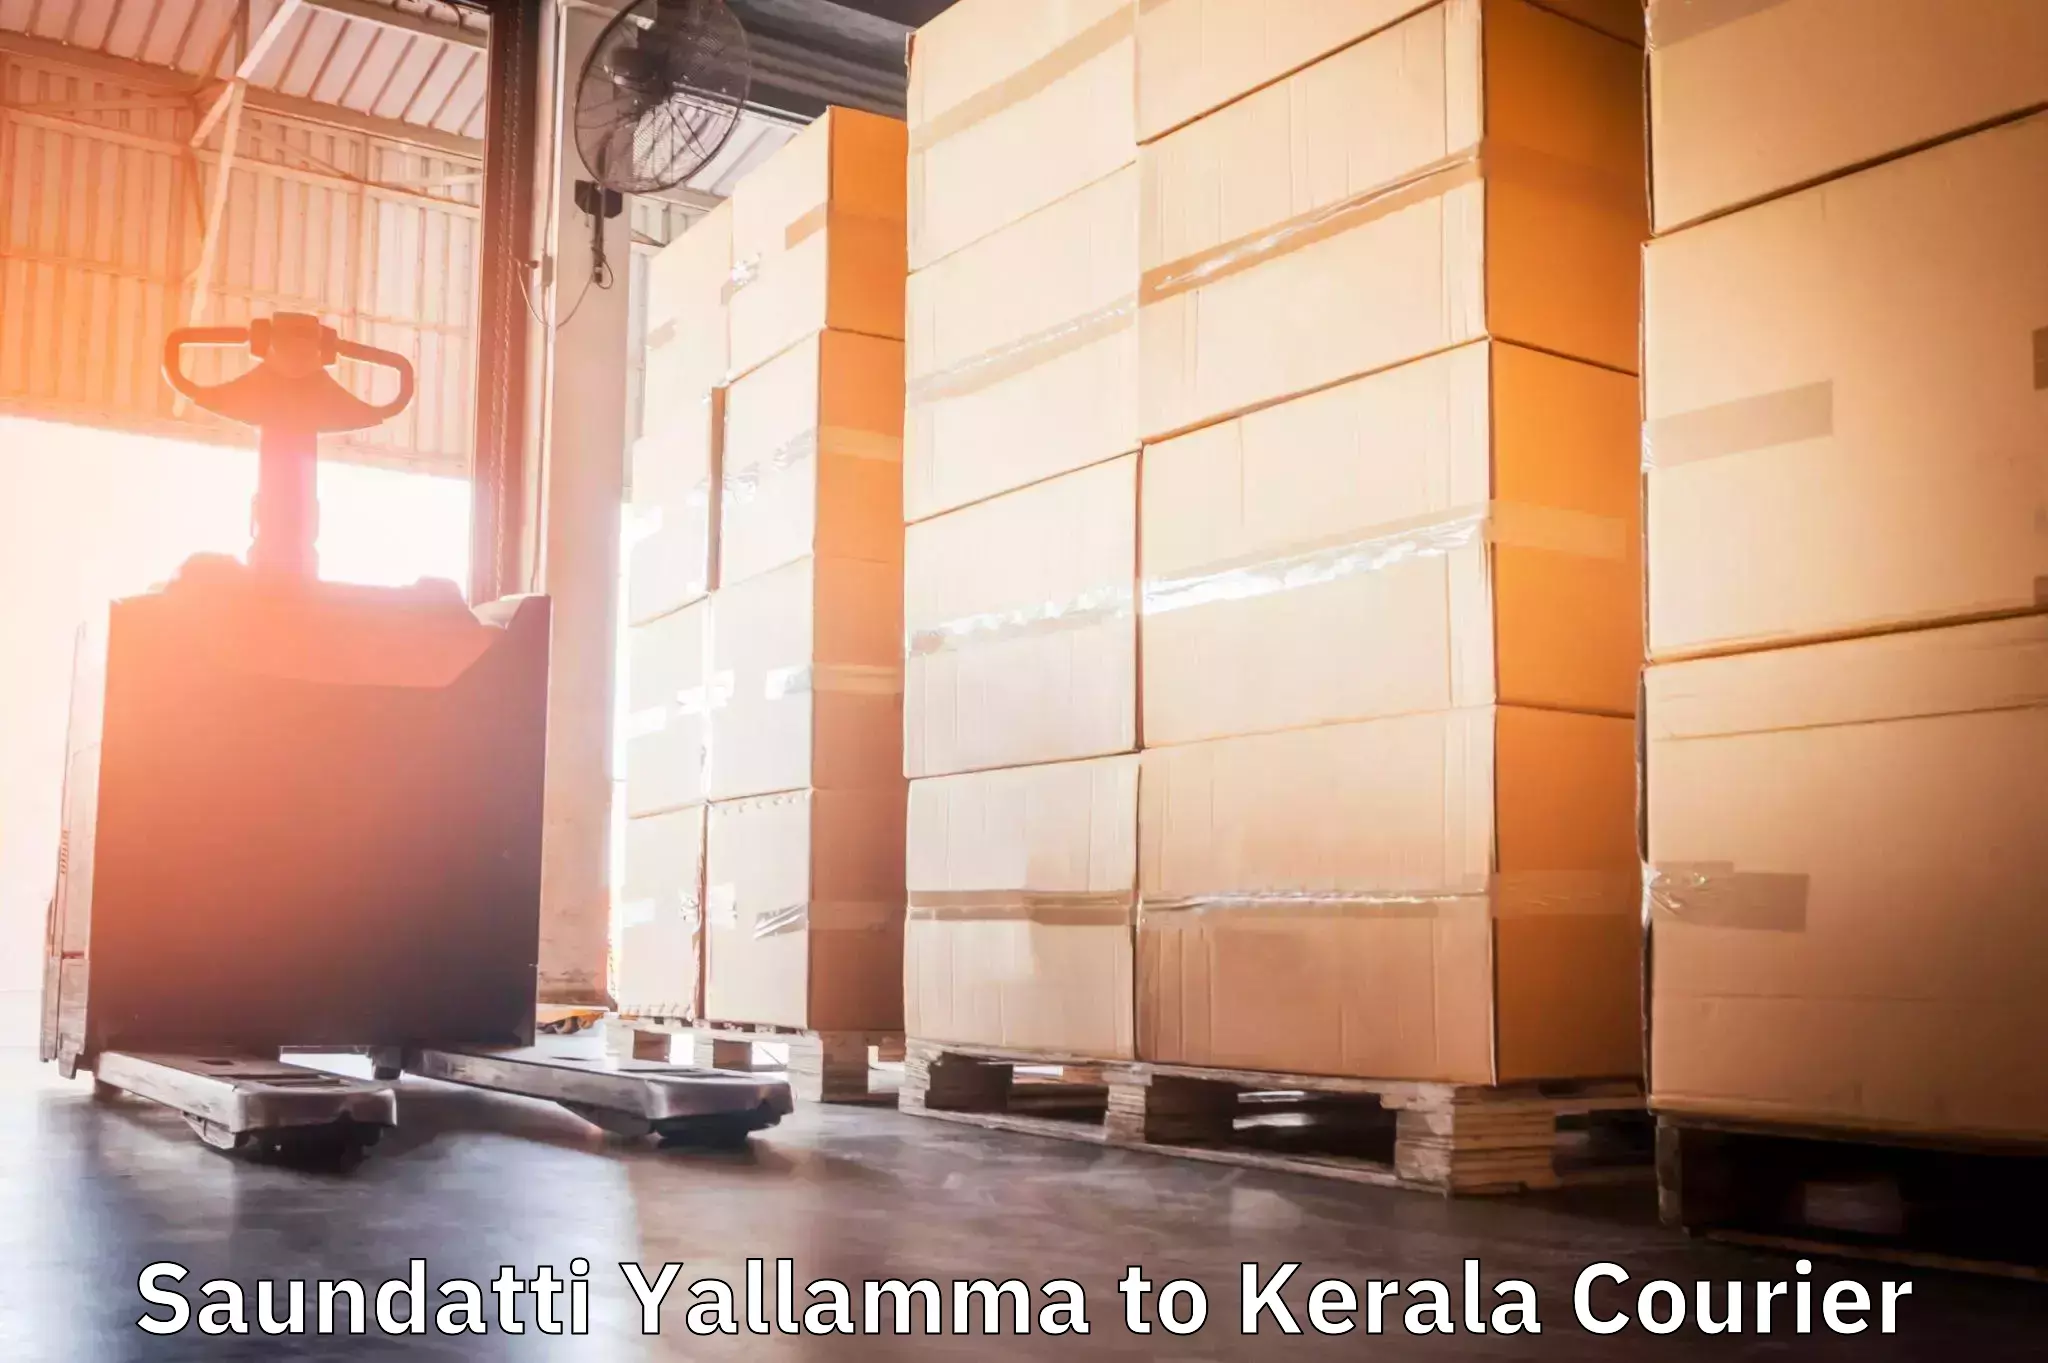 Personalized courier solutions Saundatti Yallamma to Taliparamba